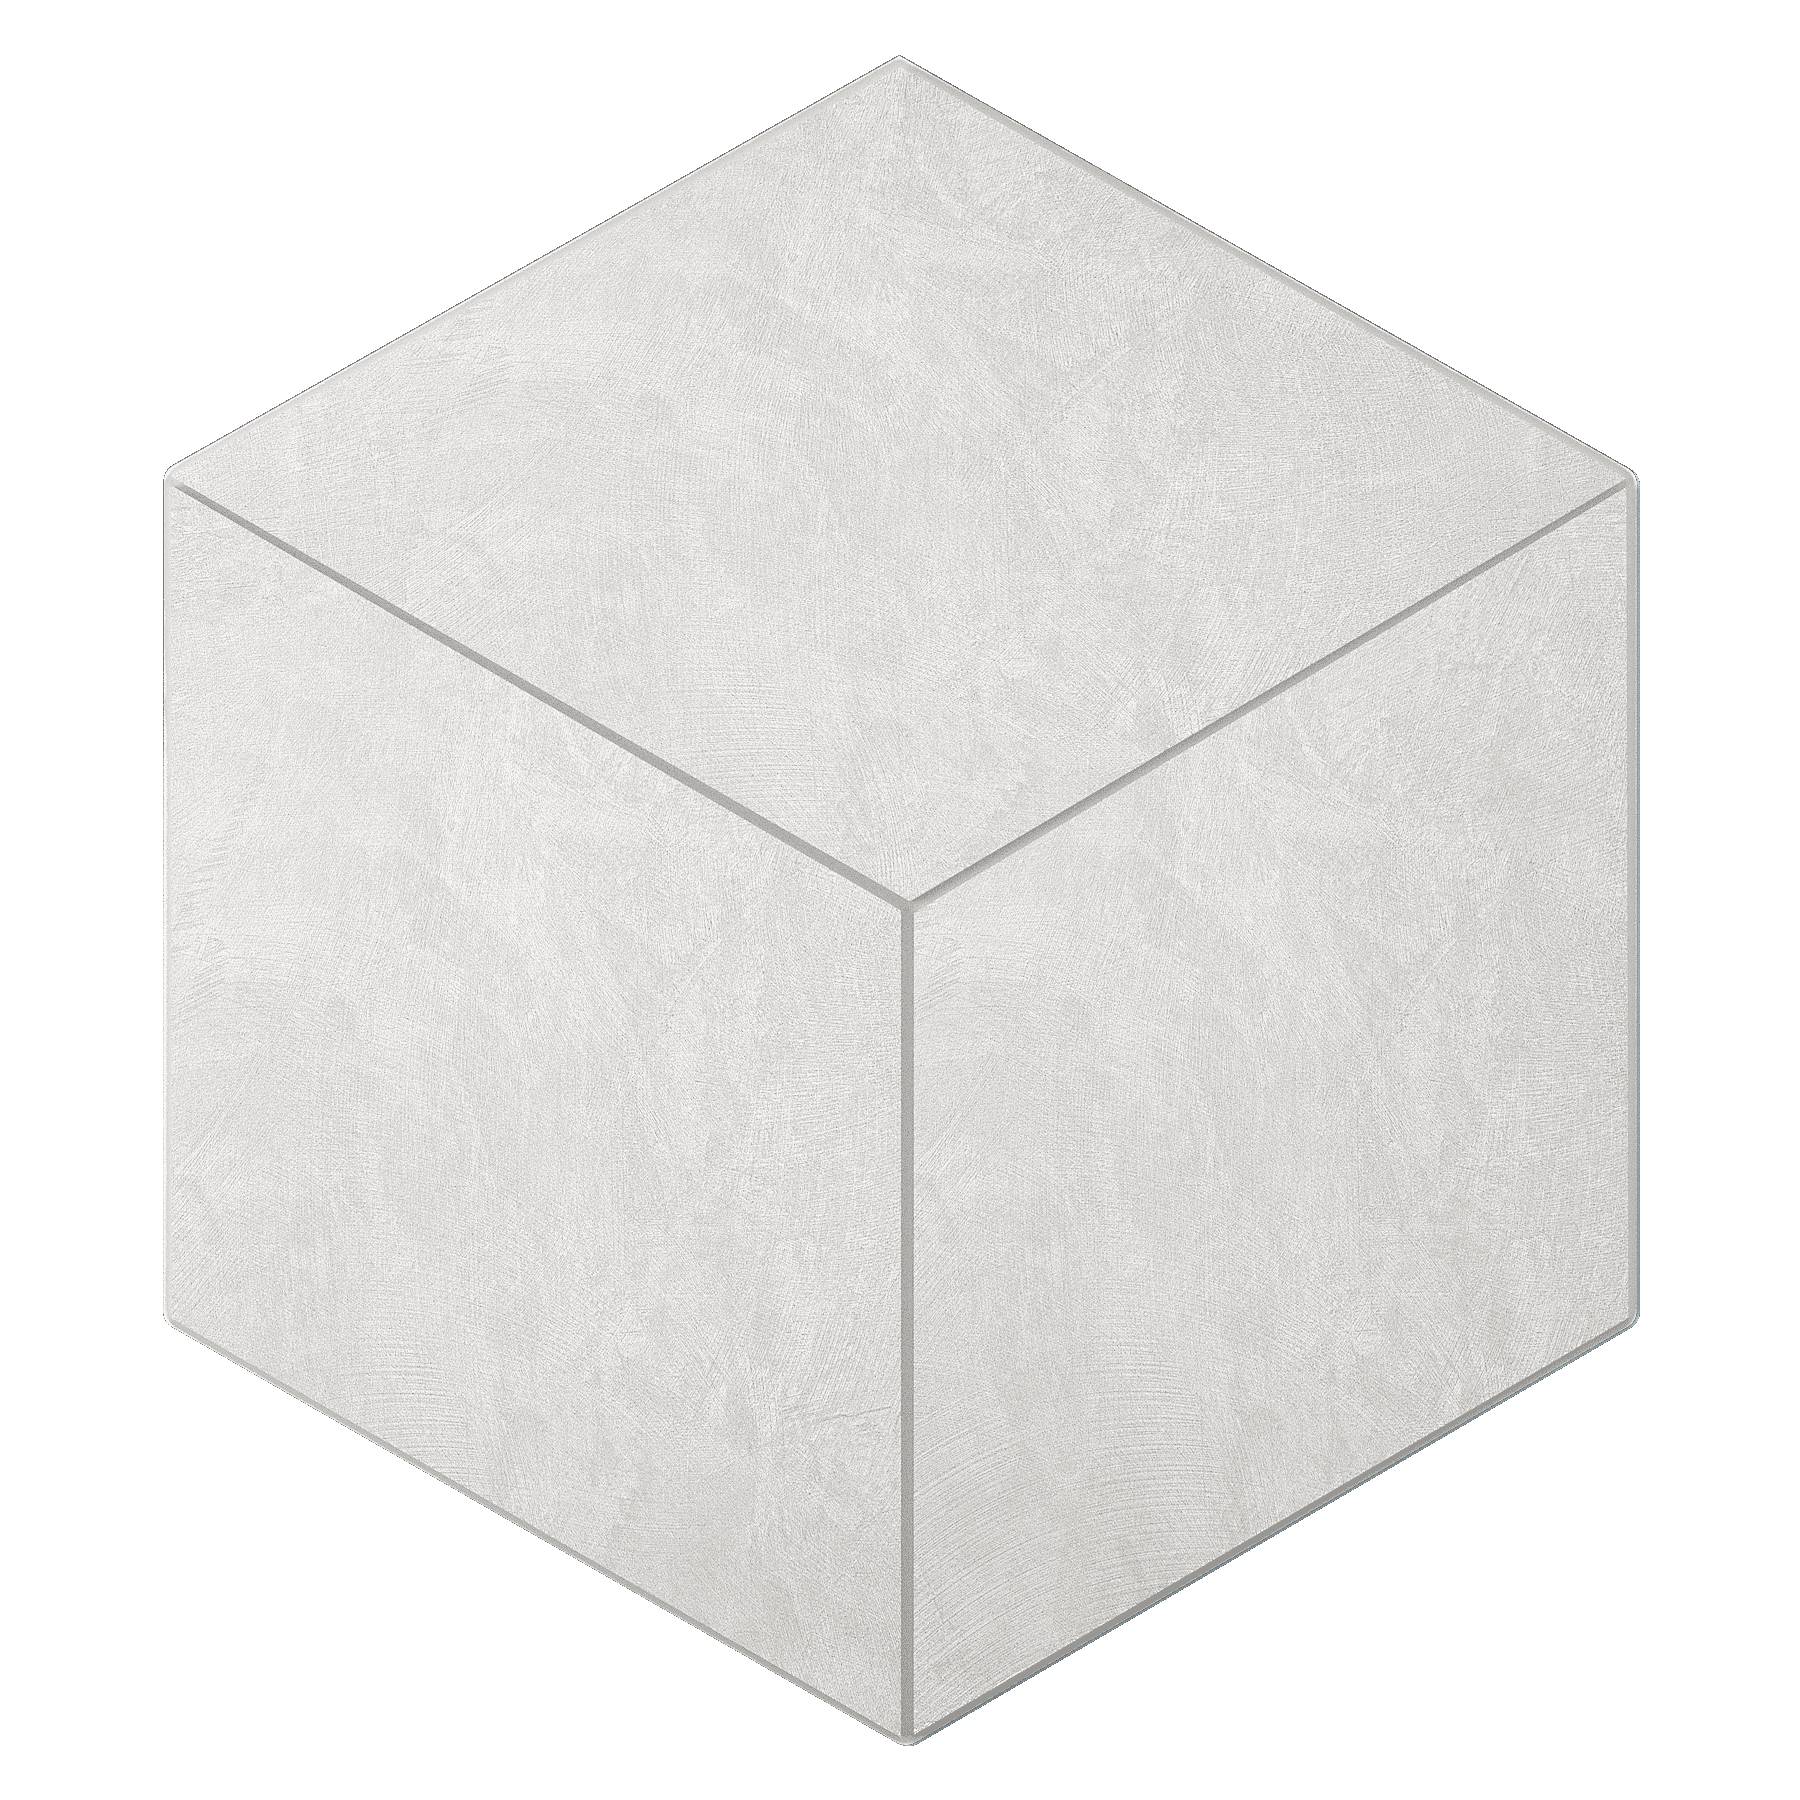 Мозаика Ametis Spectrum Milky White SR00 Cube Непол. 29x25 мозаика ametis spectrum chocolate sr07 cube непол 29x25